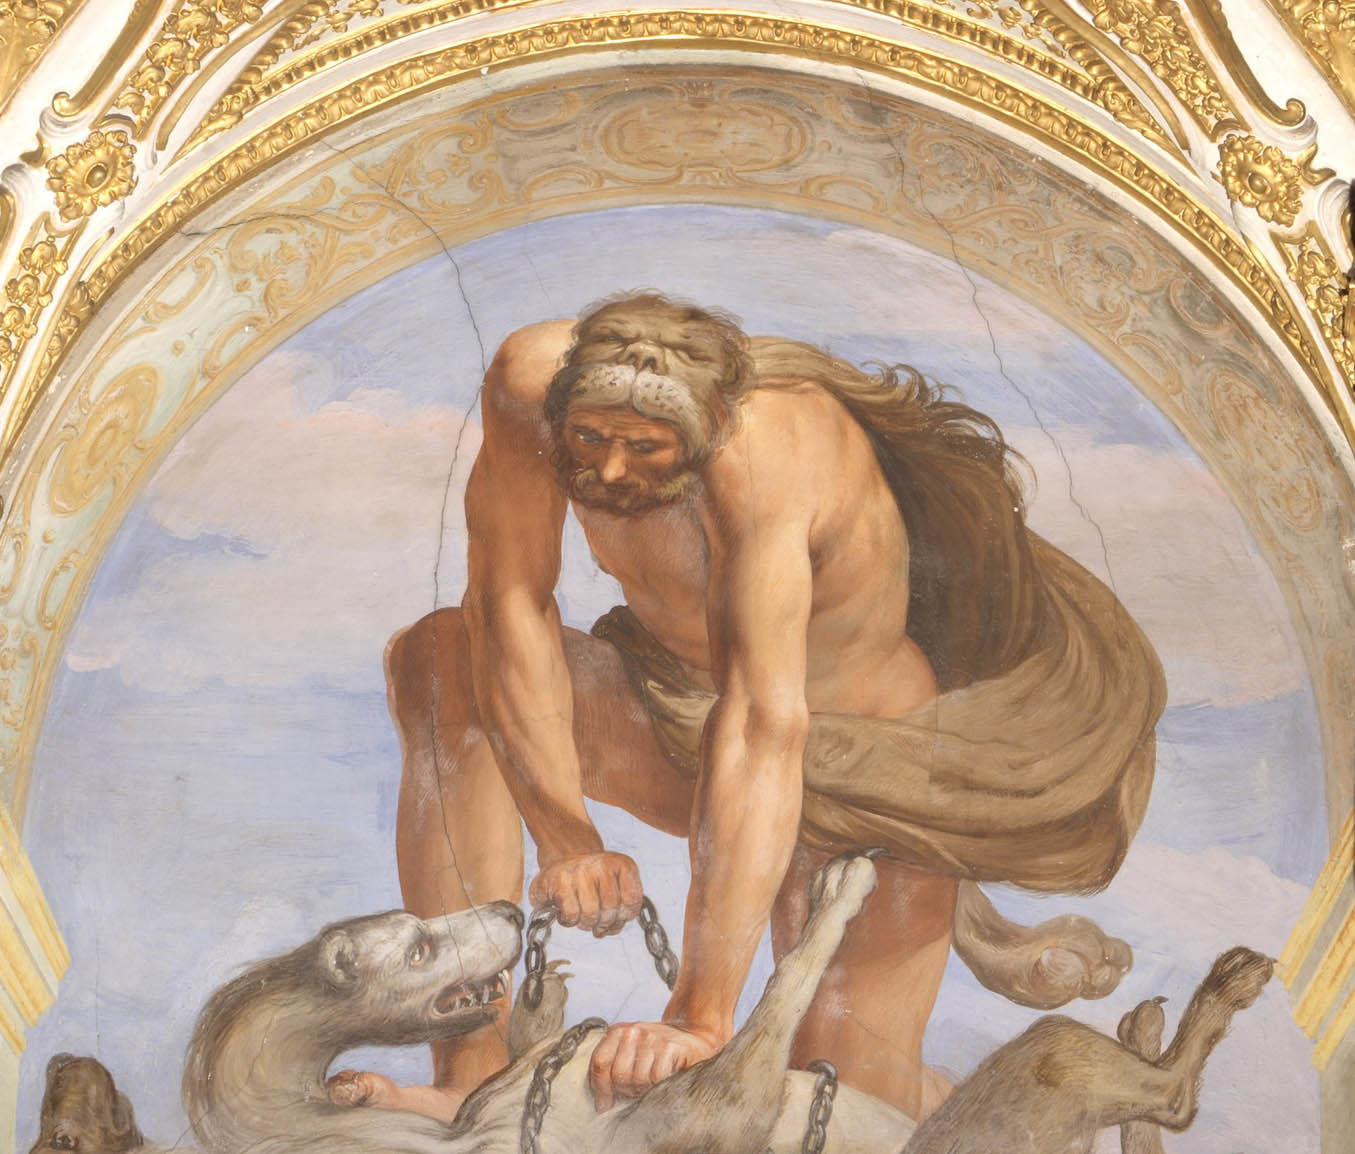 Giovanni Battista Carlone, Hercules Chains Cerberus (ca. 1655; fresco; Genoa, Palazzo Reale)